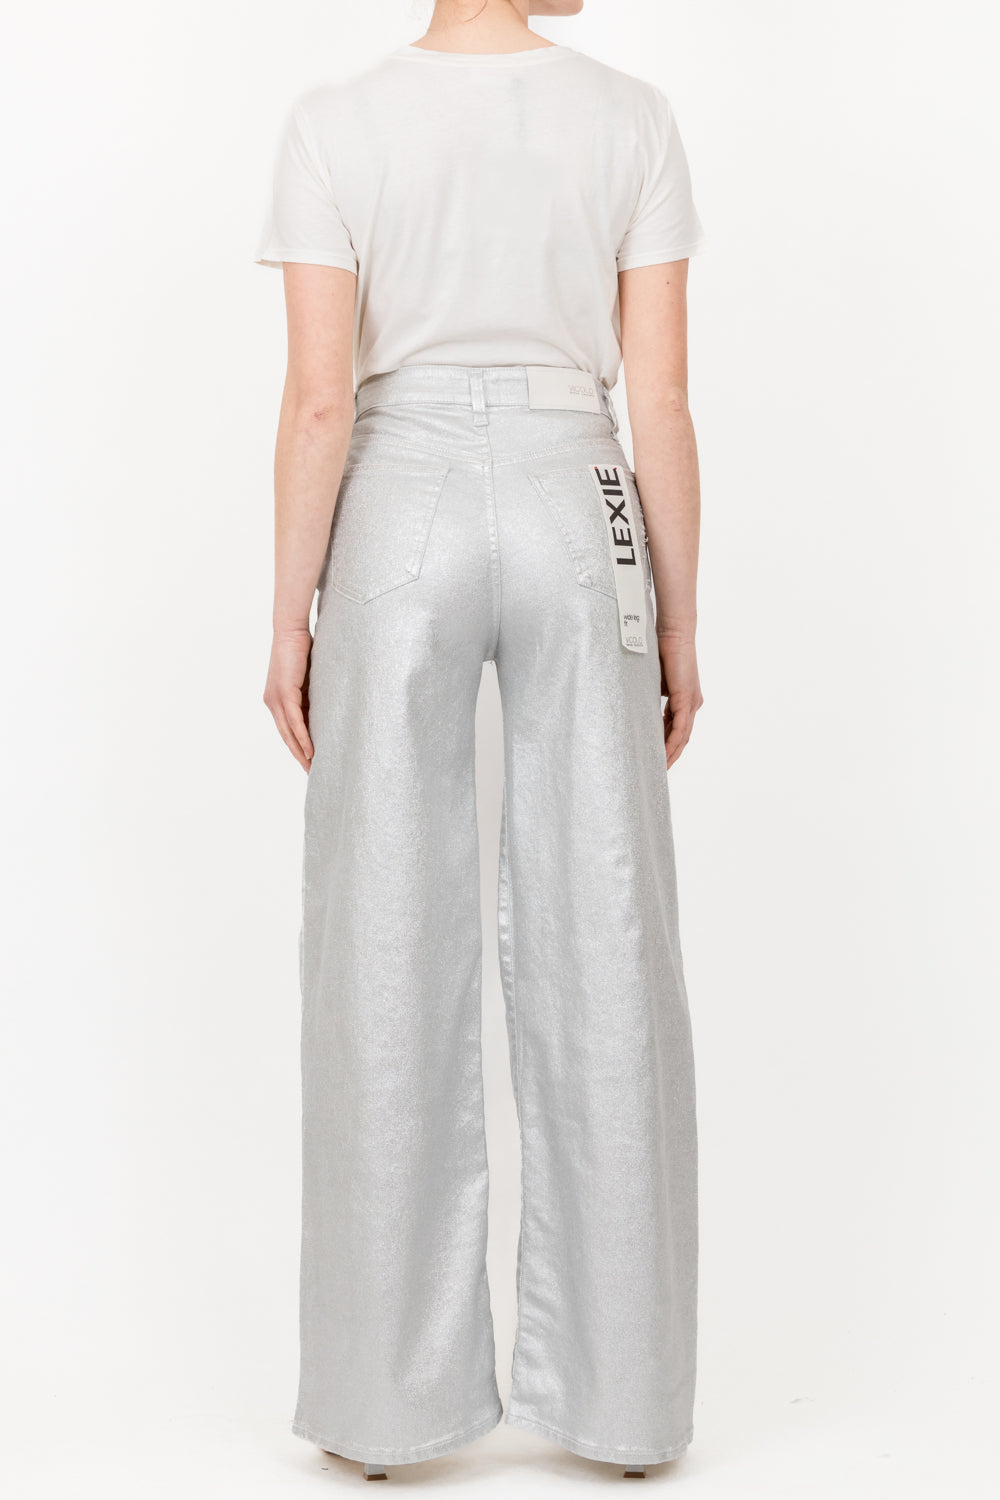 Vicolo - Pantalone Jeans spalmato argento Art. DB5029